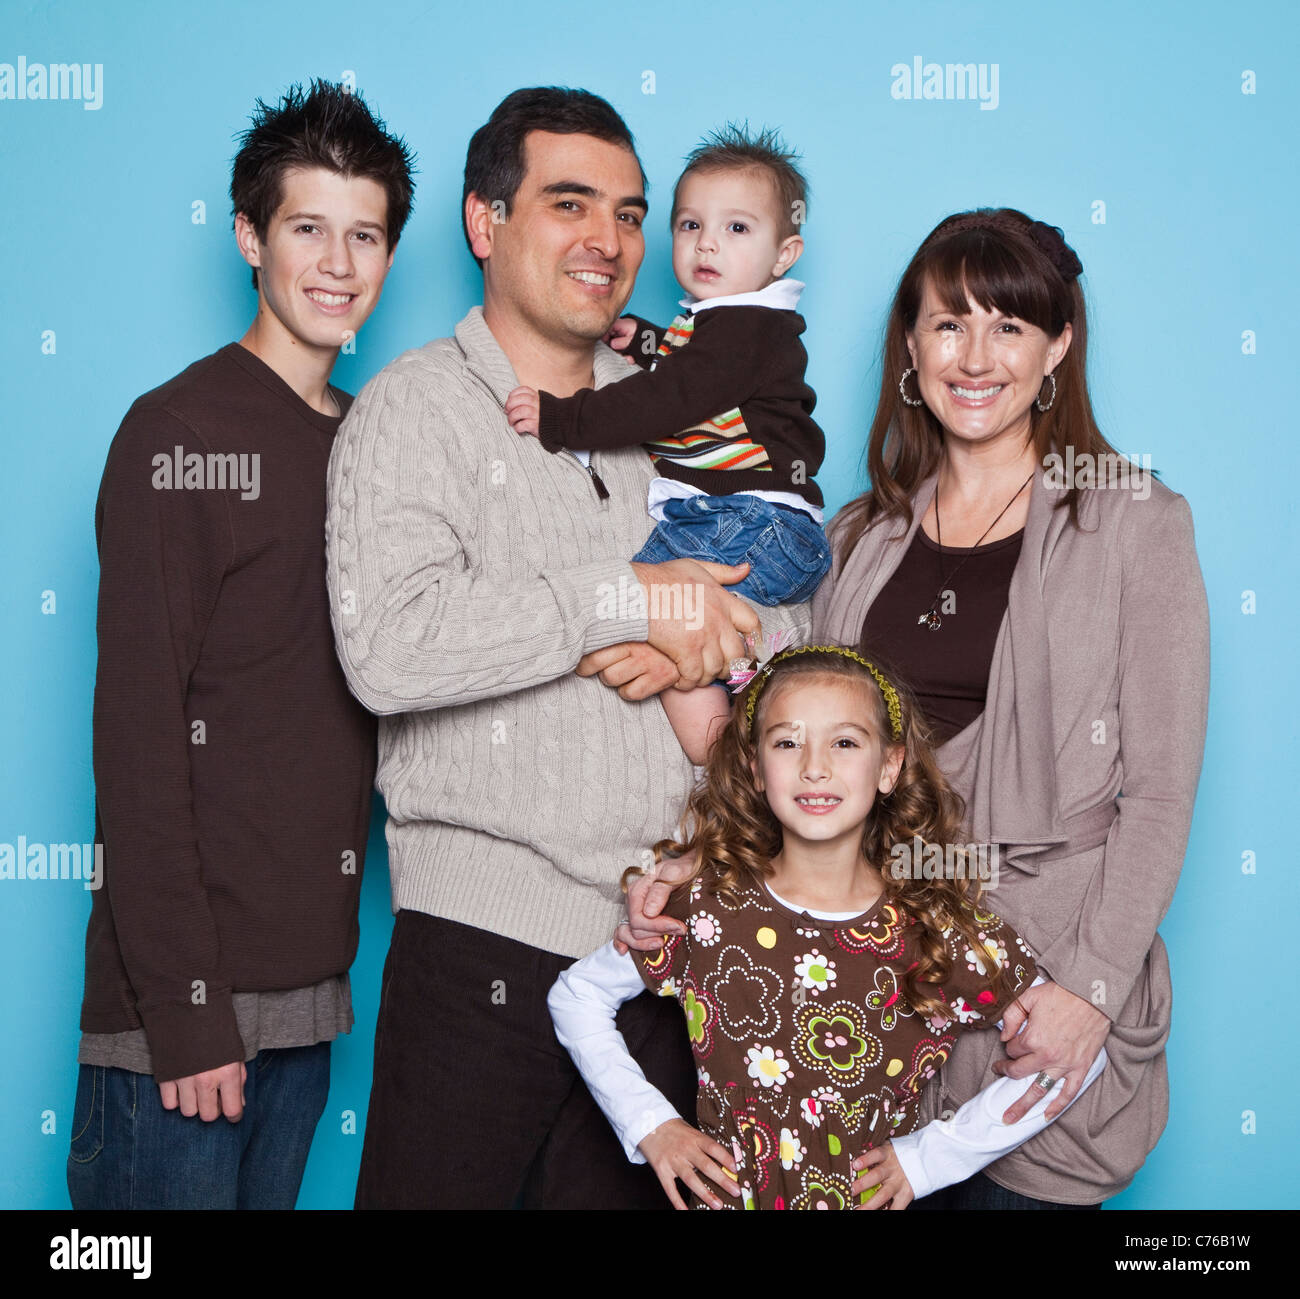 Portrait de famille avec trois enfants (16-17, 8-9, 2-3), studio shot Banque D'Images